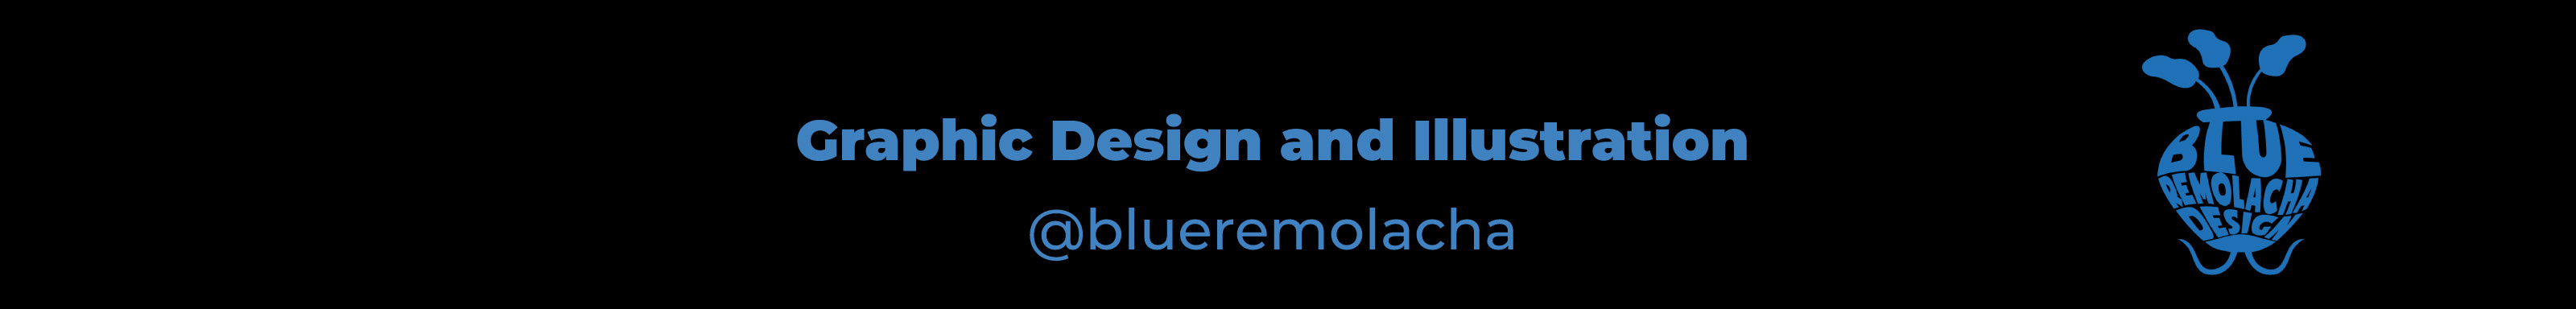 Blue Remolacha's profile banner